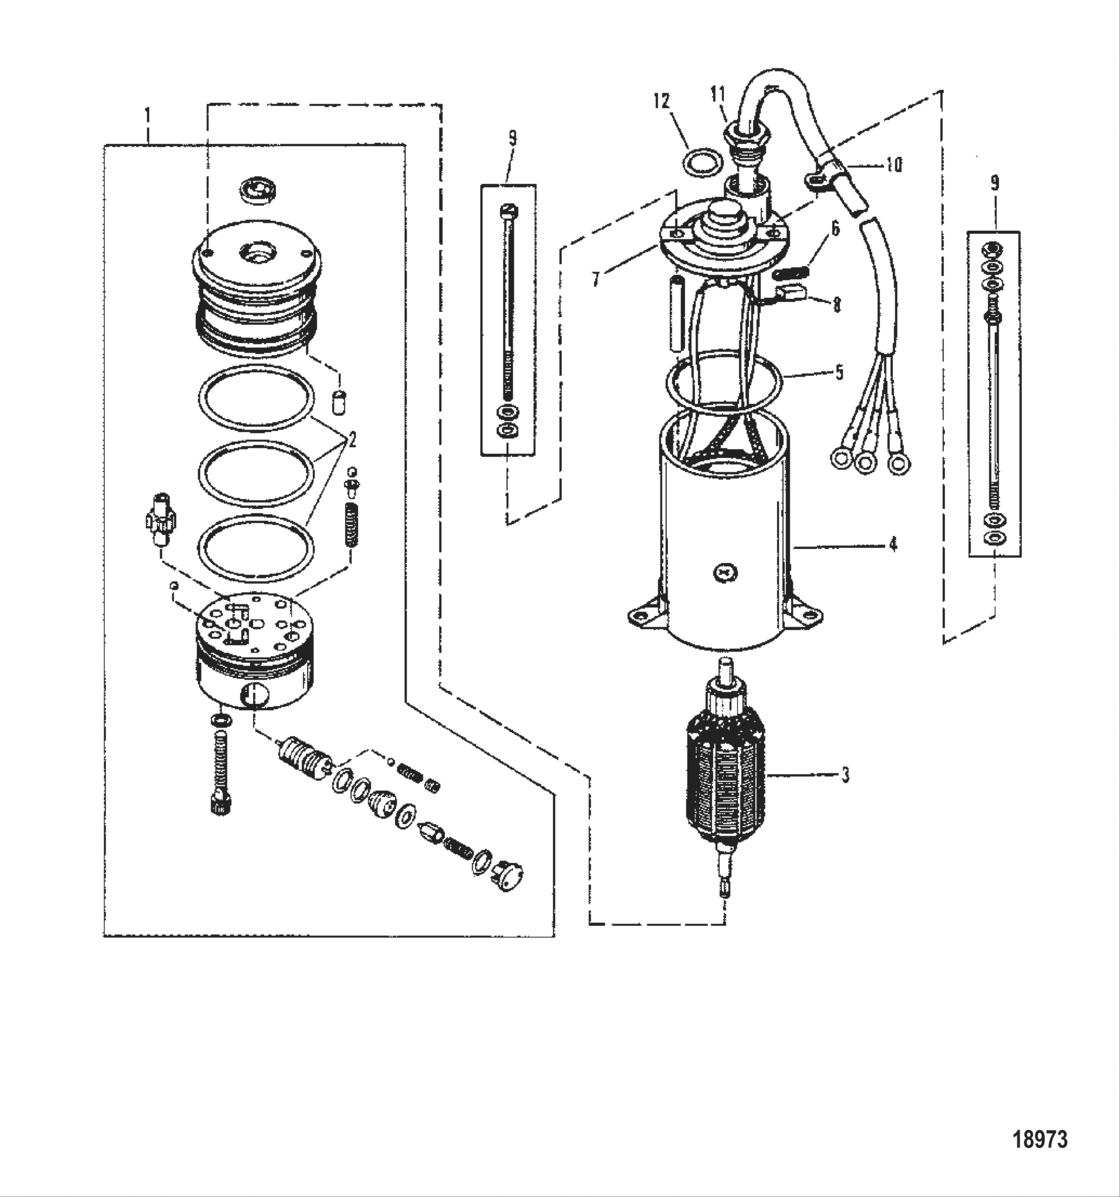 Power Trim Pump (Prestolite Round Motor)